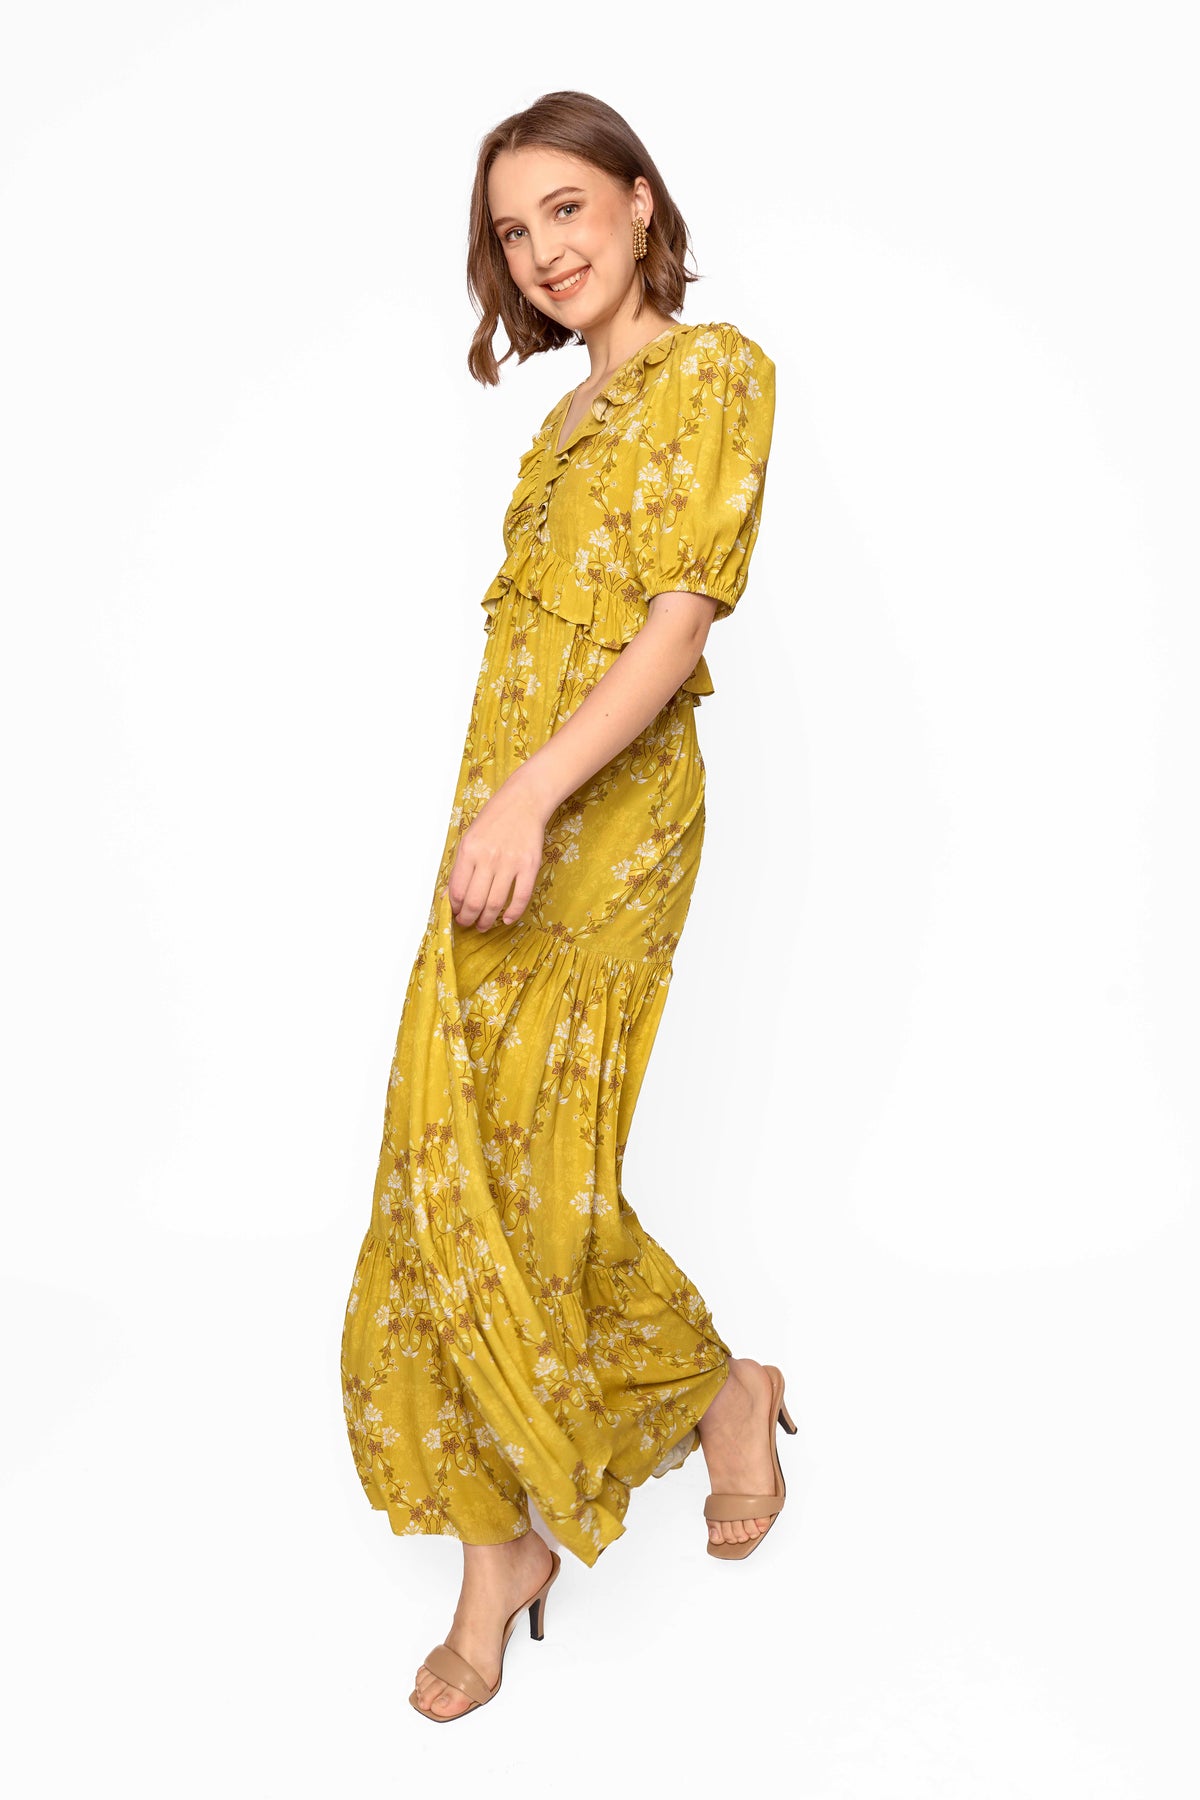 KALEA Dress in Yellow Bunga